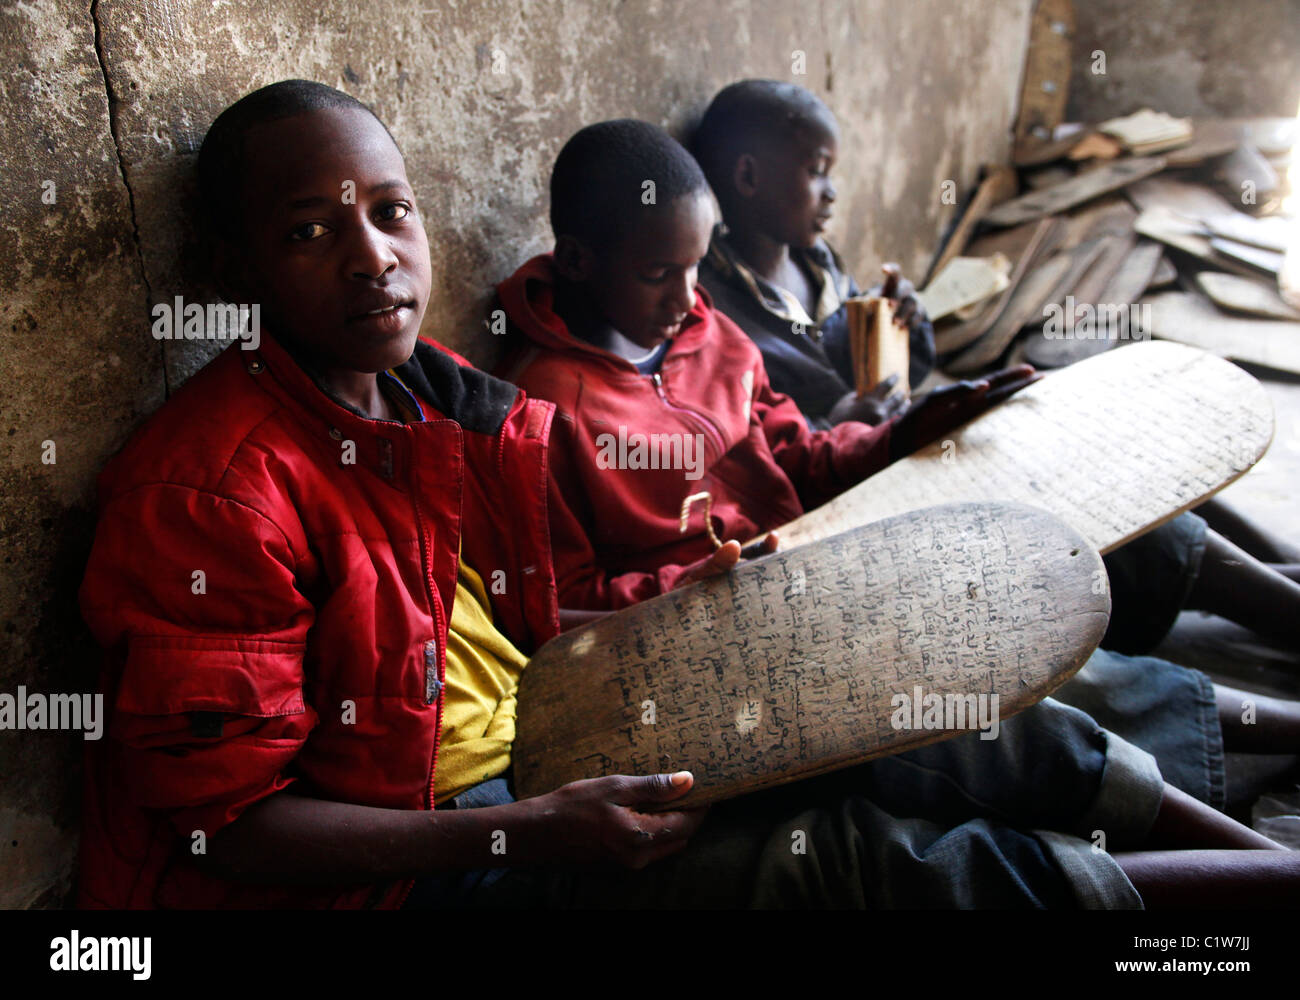 Les jeunes enfants apprennent le coran à partir de tablettes de bois dans une école coranique Talib à Saint Louis, Sénégal Banque D'Images